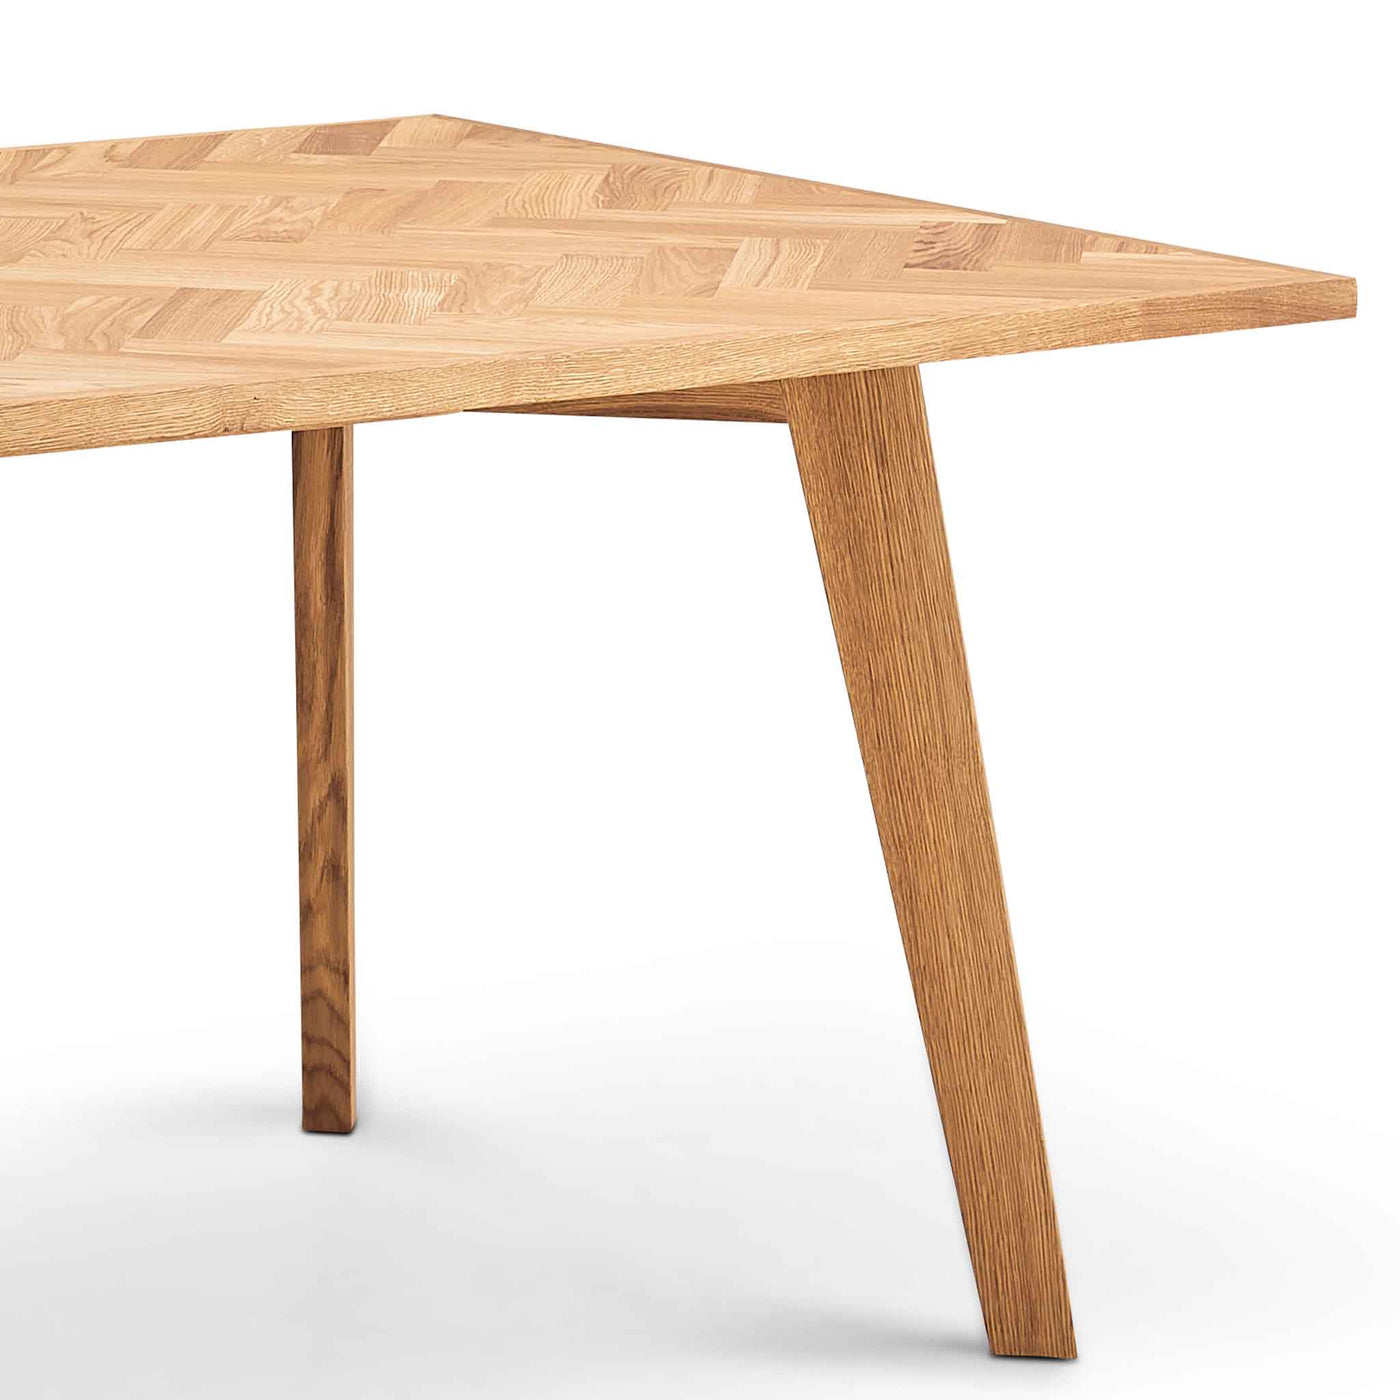 Parquette spisebord med sildebensmønster 100x220cm i naturolieret eg fra Kristensen & Kristensen